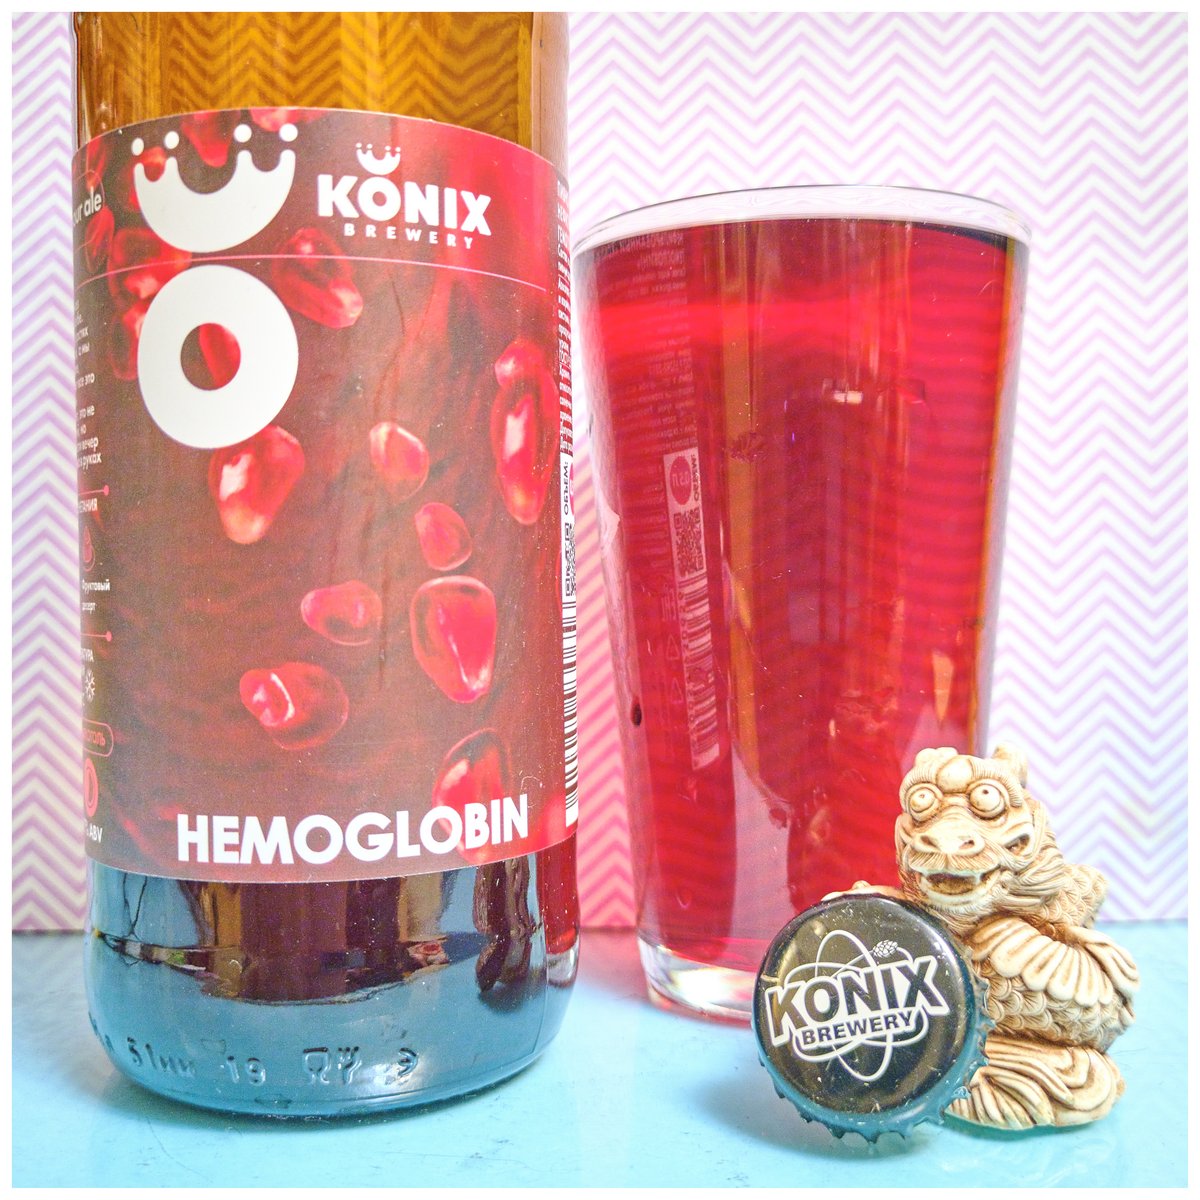 Konix Hemoglobine 2020-02-04 21-